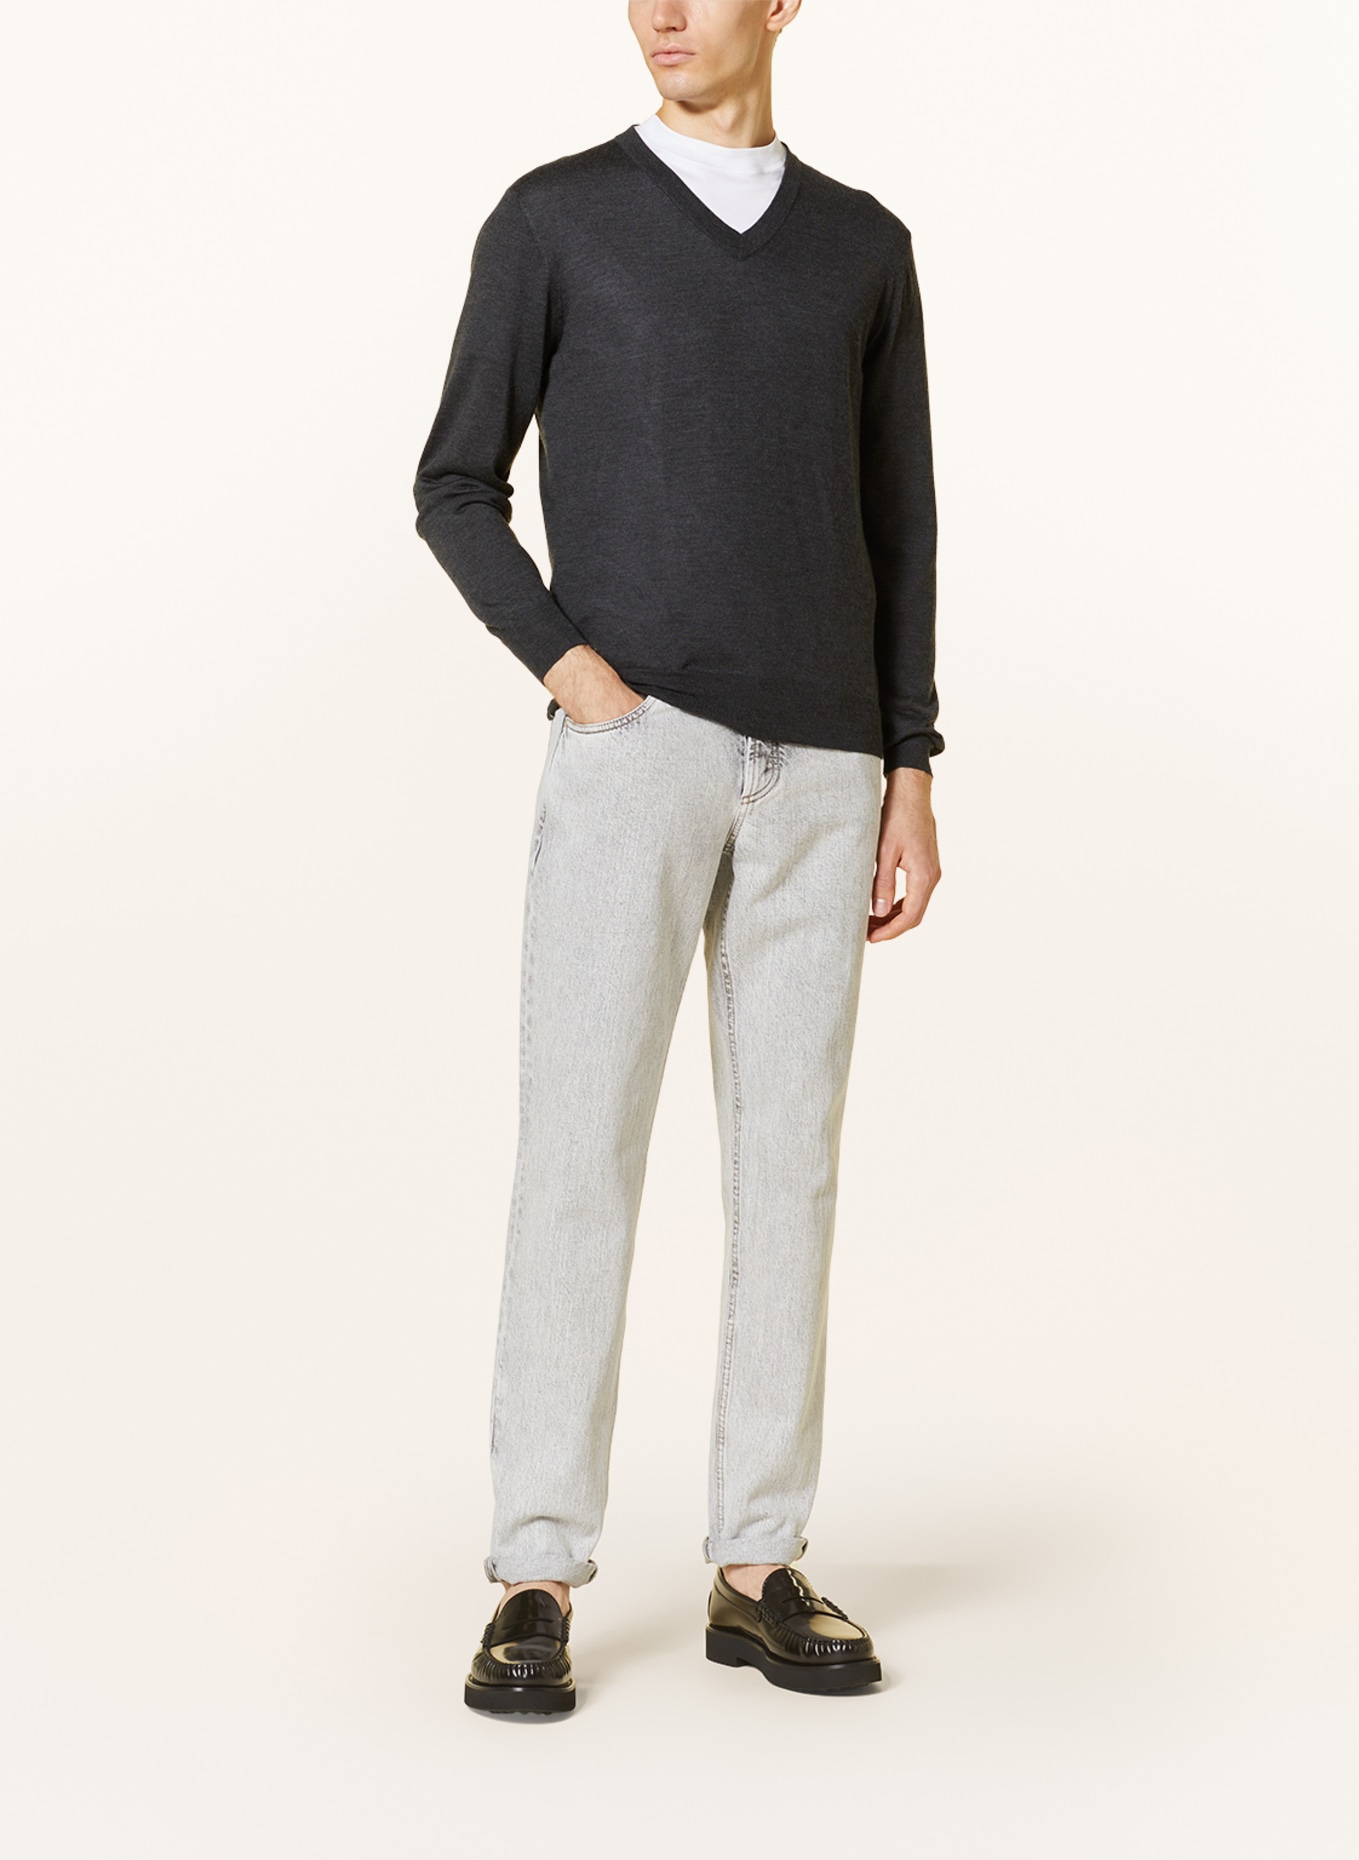 FIORONI Cashmere-Pullover, Farbe: DUNKELGRAU (Bild 2)